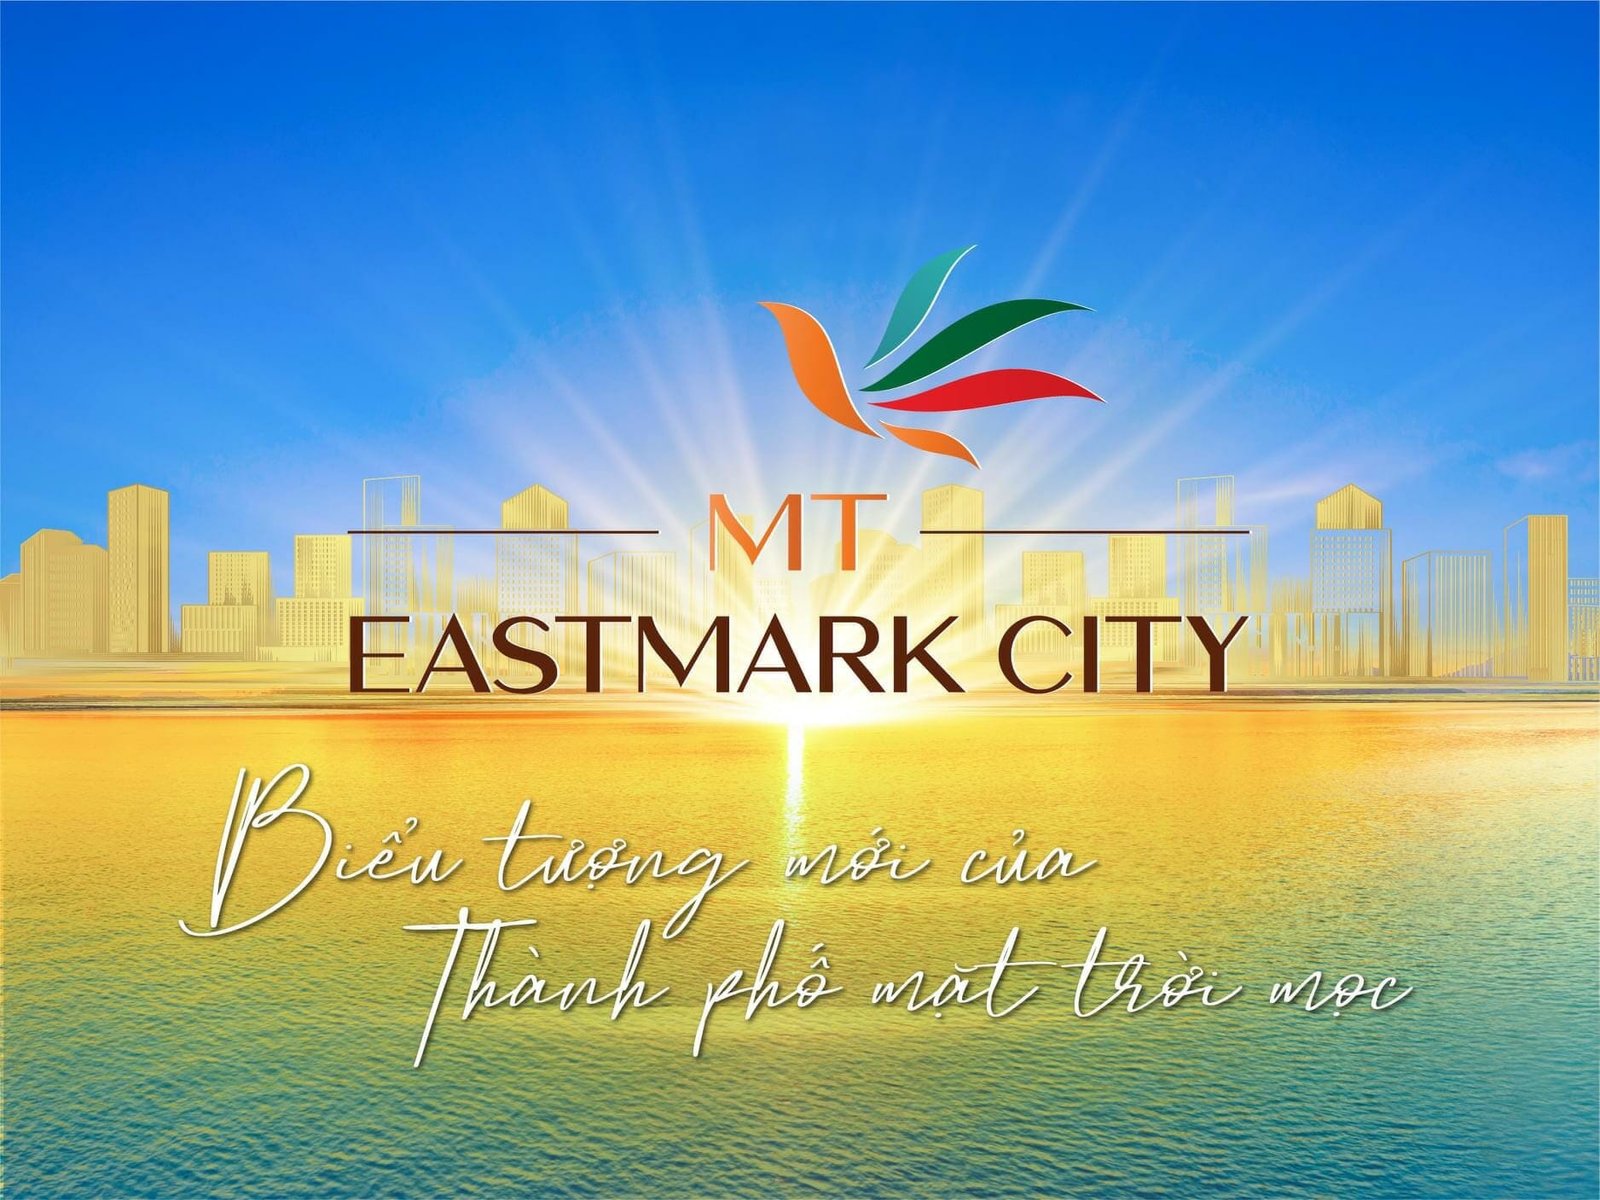 Tại sao nên giữ chỗ dự án MT EASTMARK CITY ngay thời điểm này?